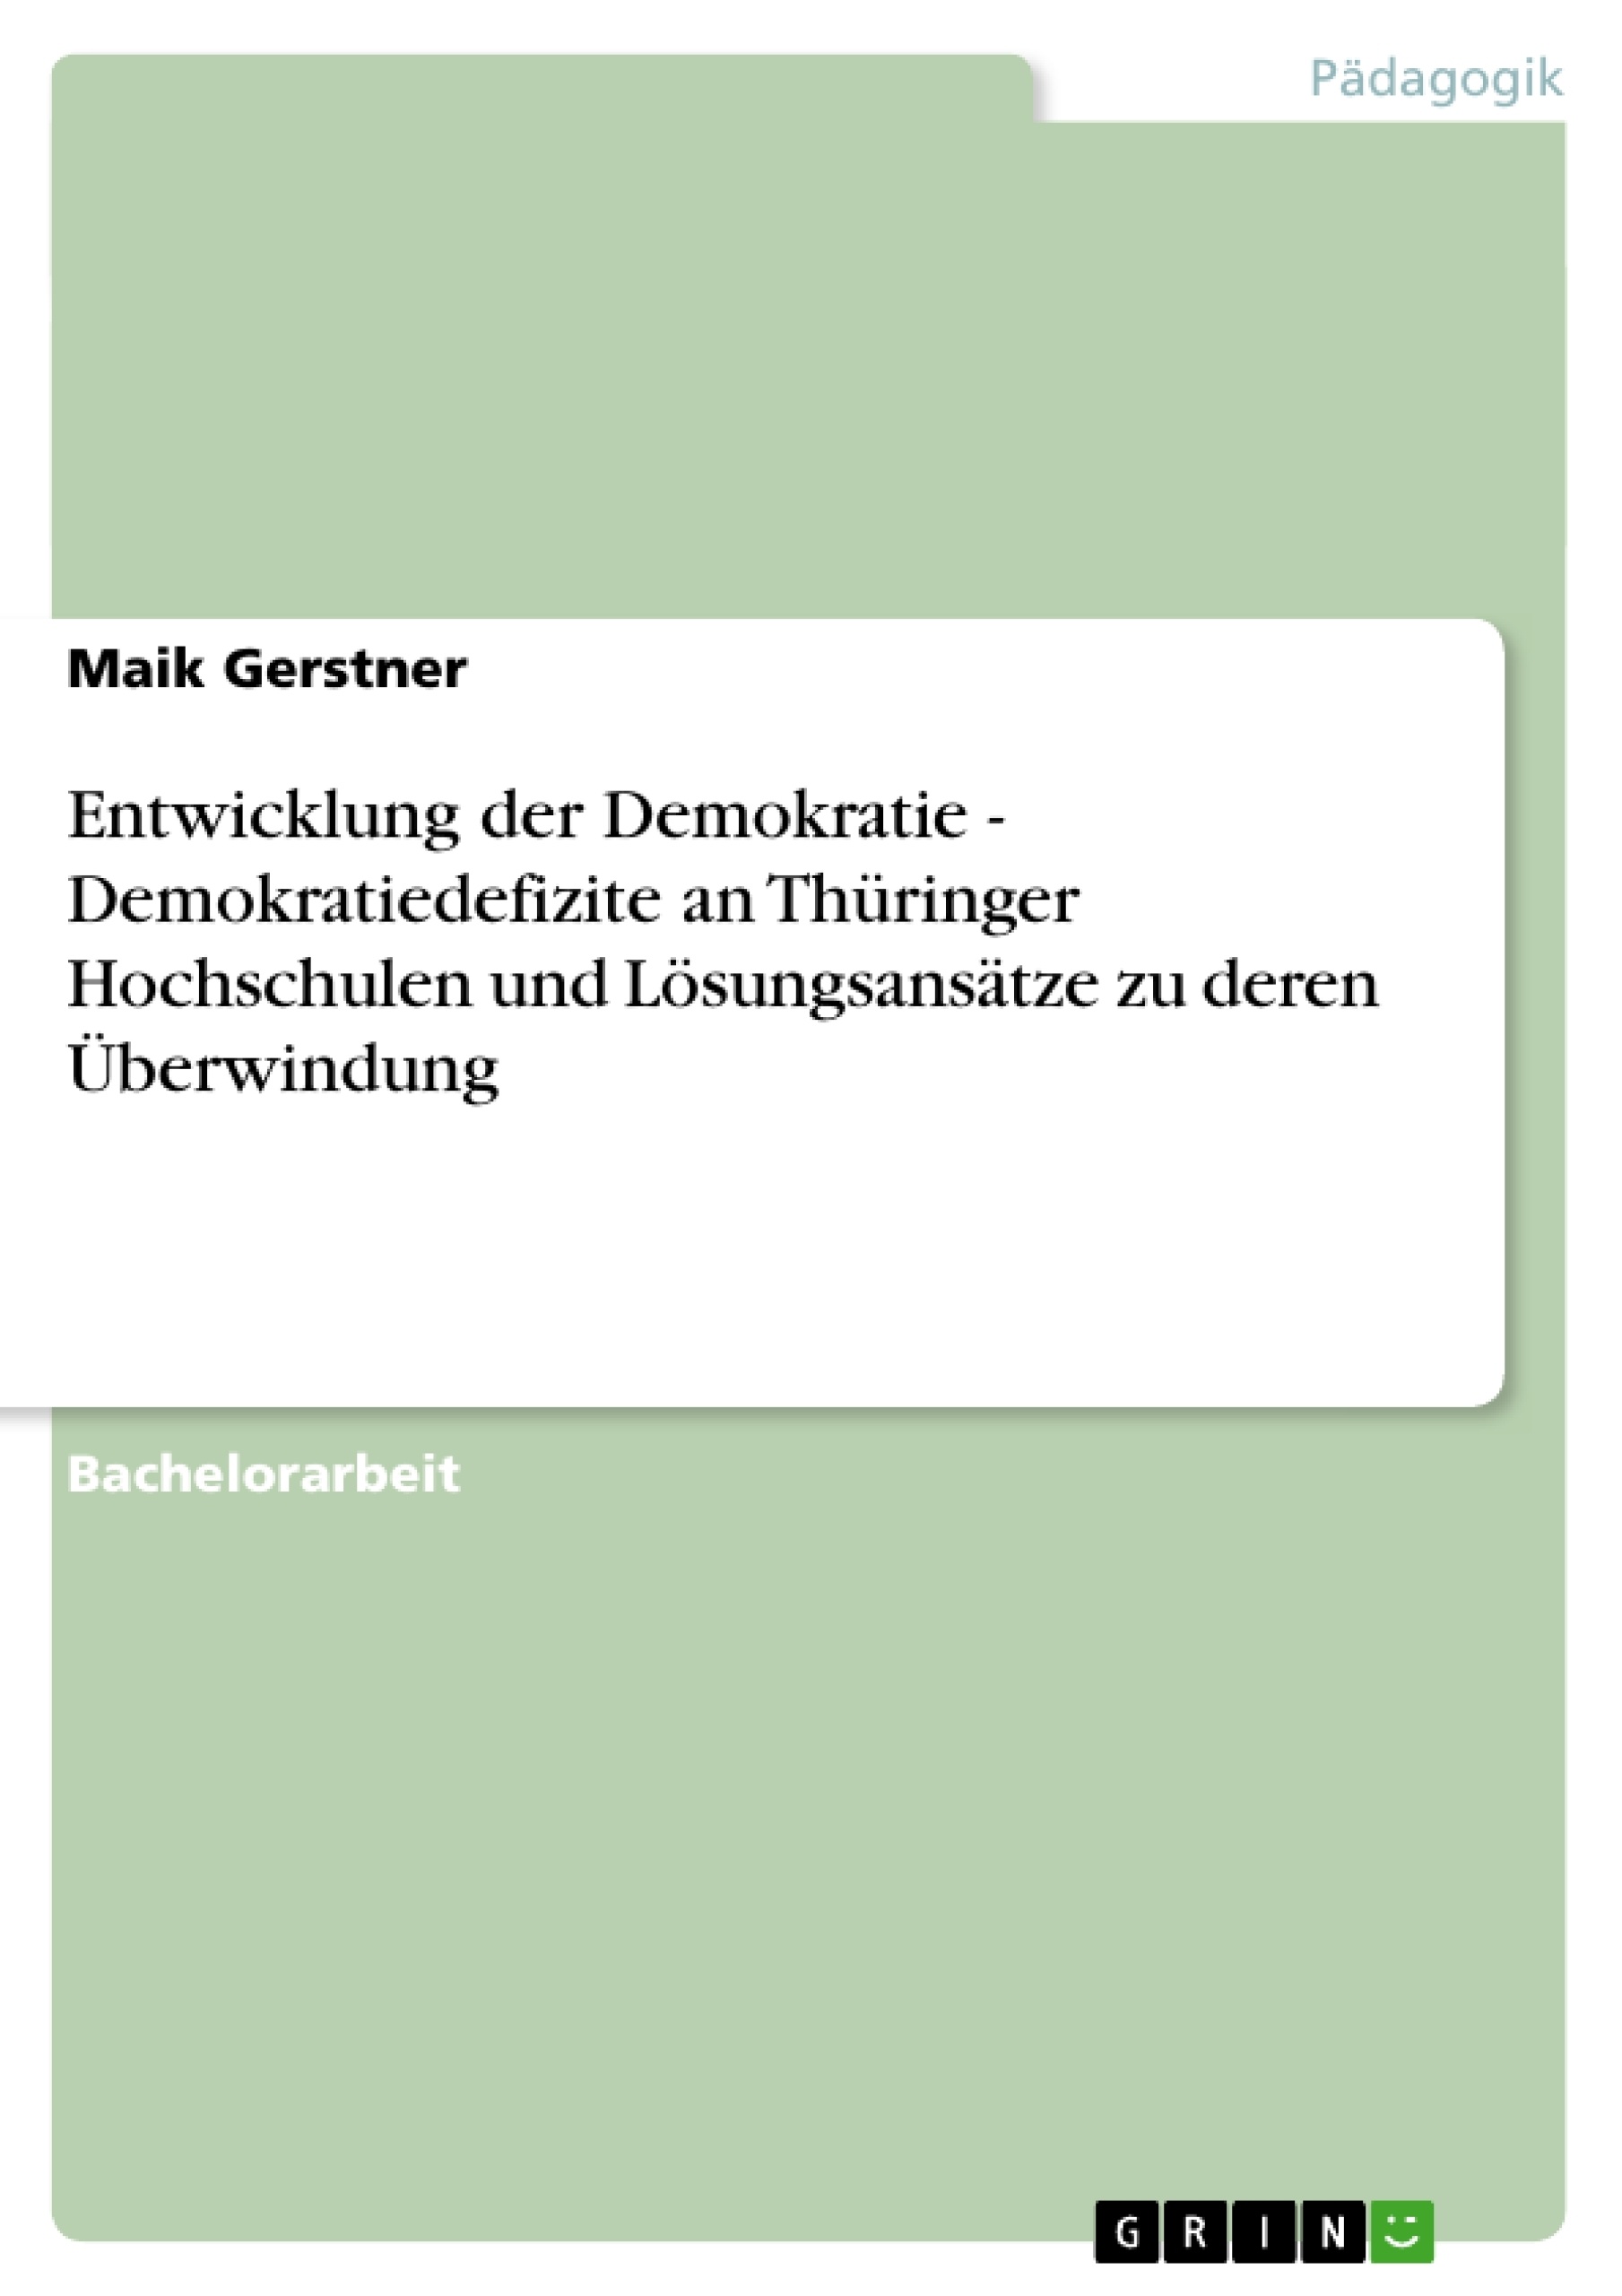 Título: Entwicklung der Demokratie - Demokratiedefizite an Thüringer Hochschulen und Lösungsansätze zu deren Überwindung